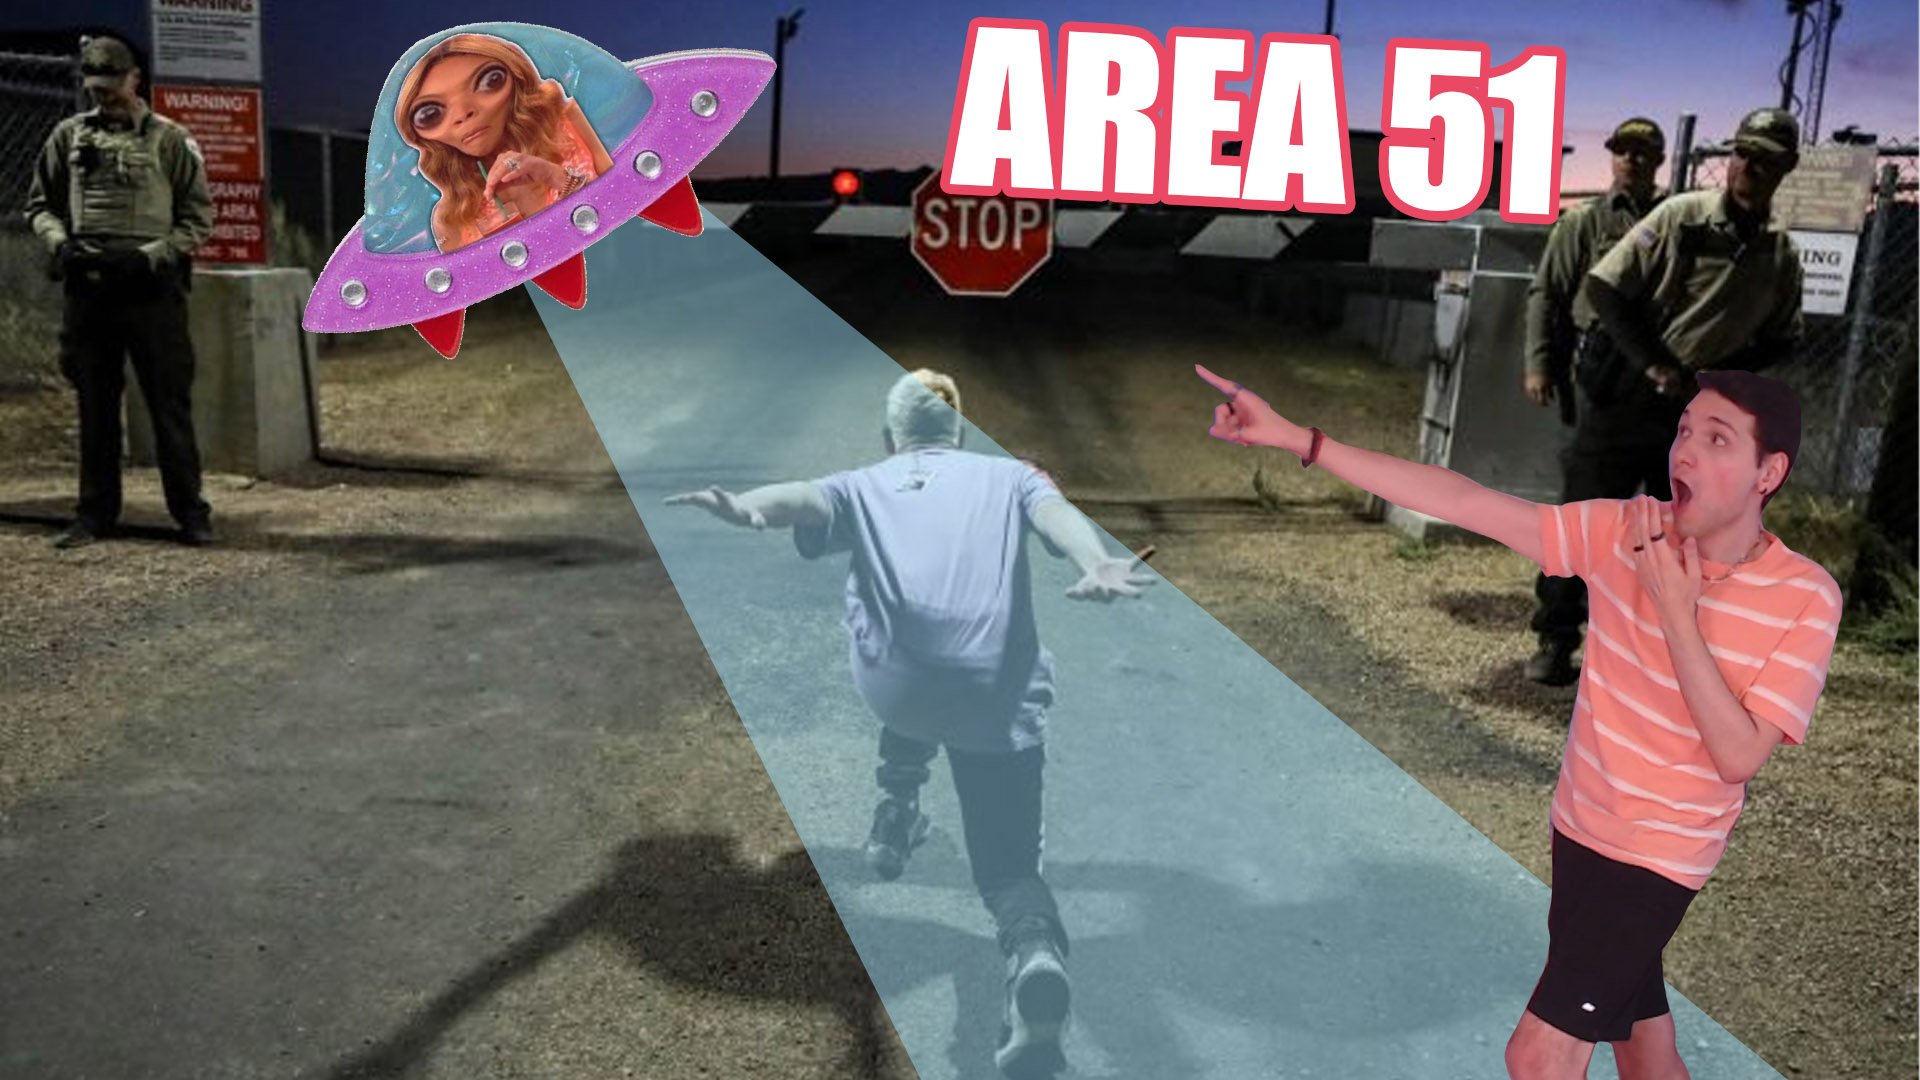 area 51 ufo